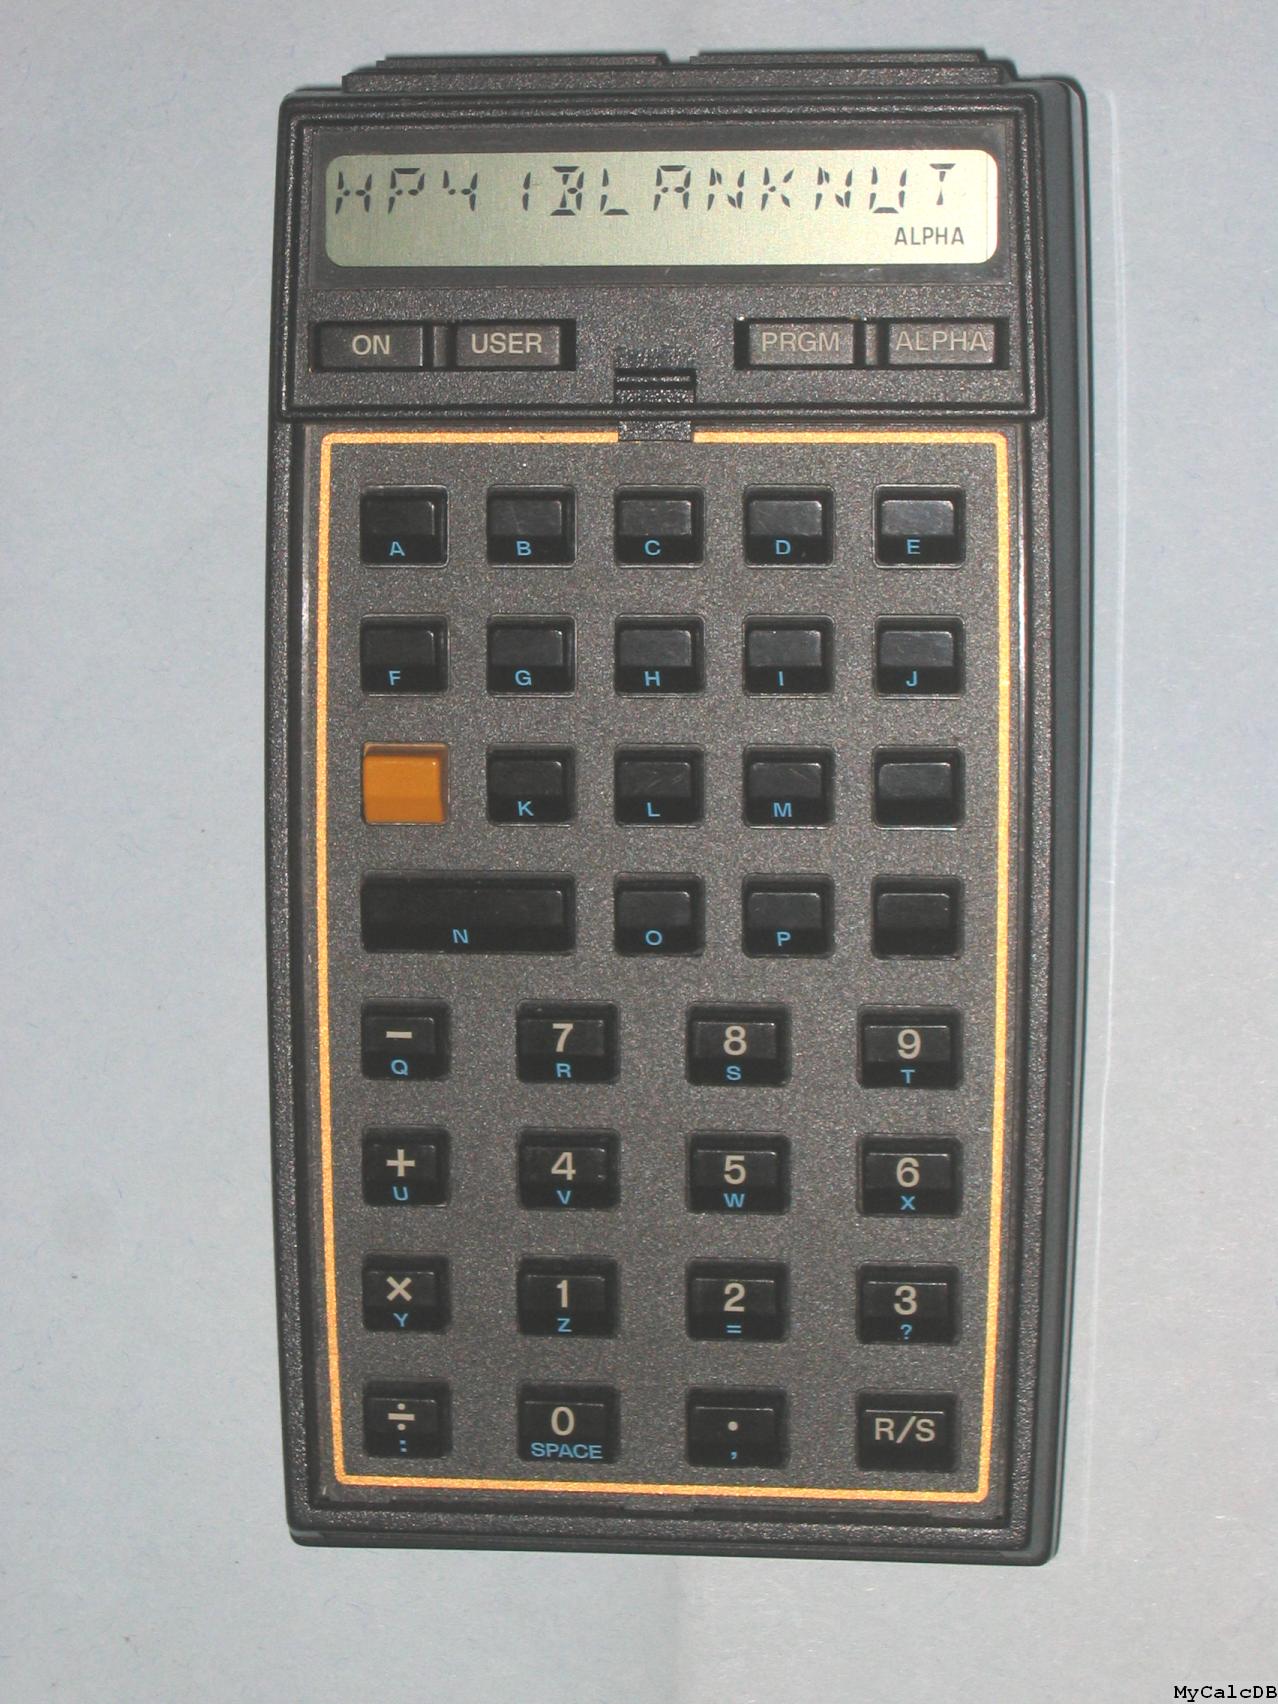 Hewlett-Packard 41Opt001